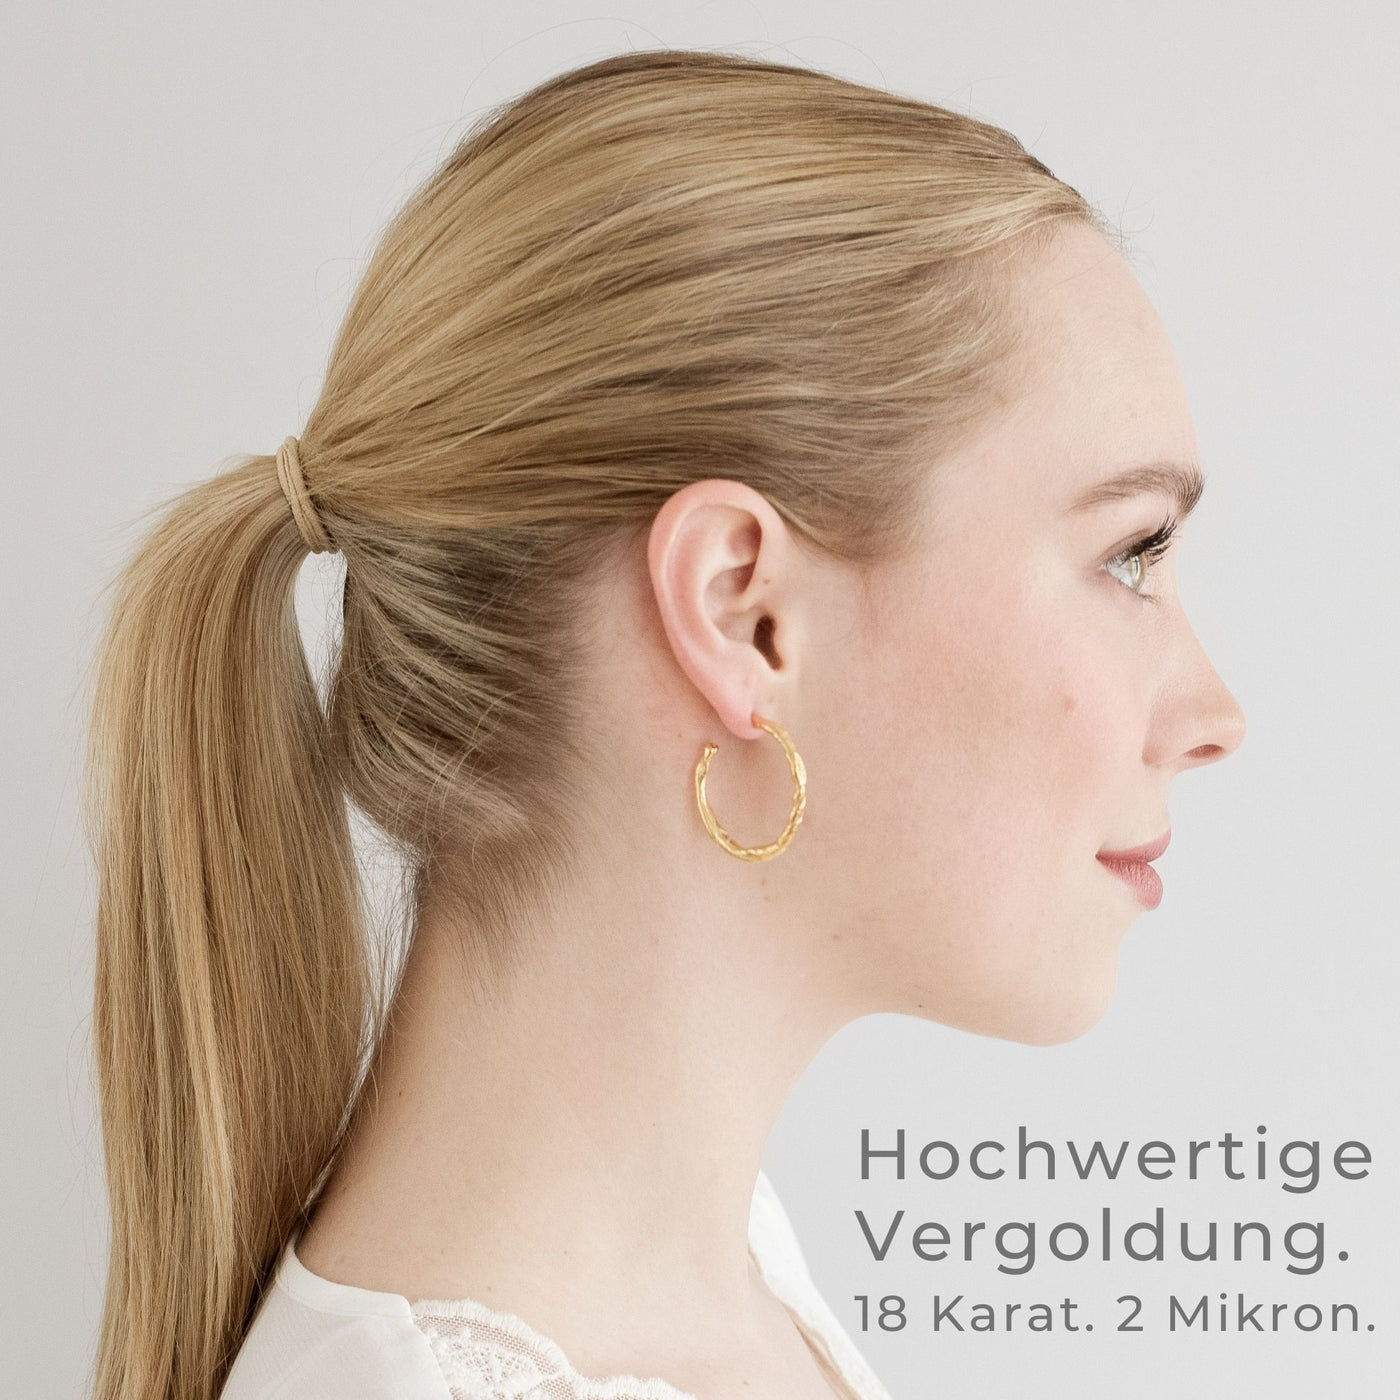 FEVIK // Large hoop earrings gold-plated